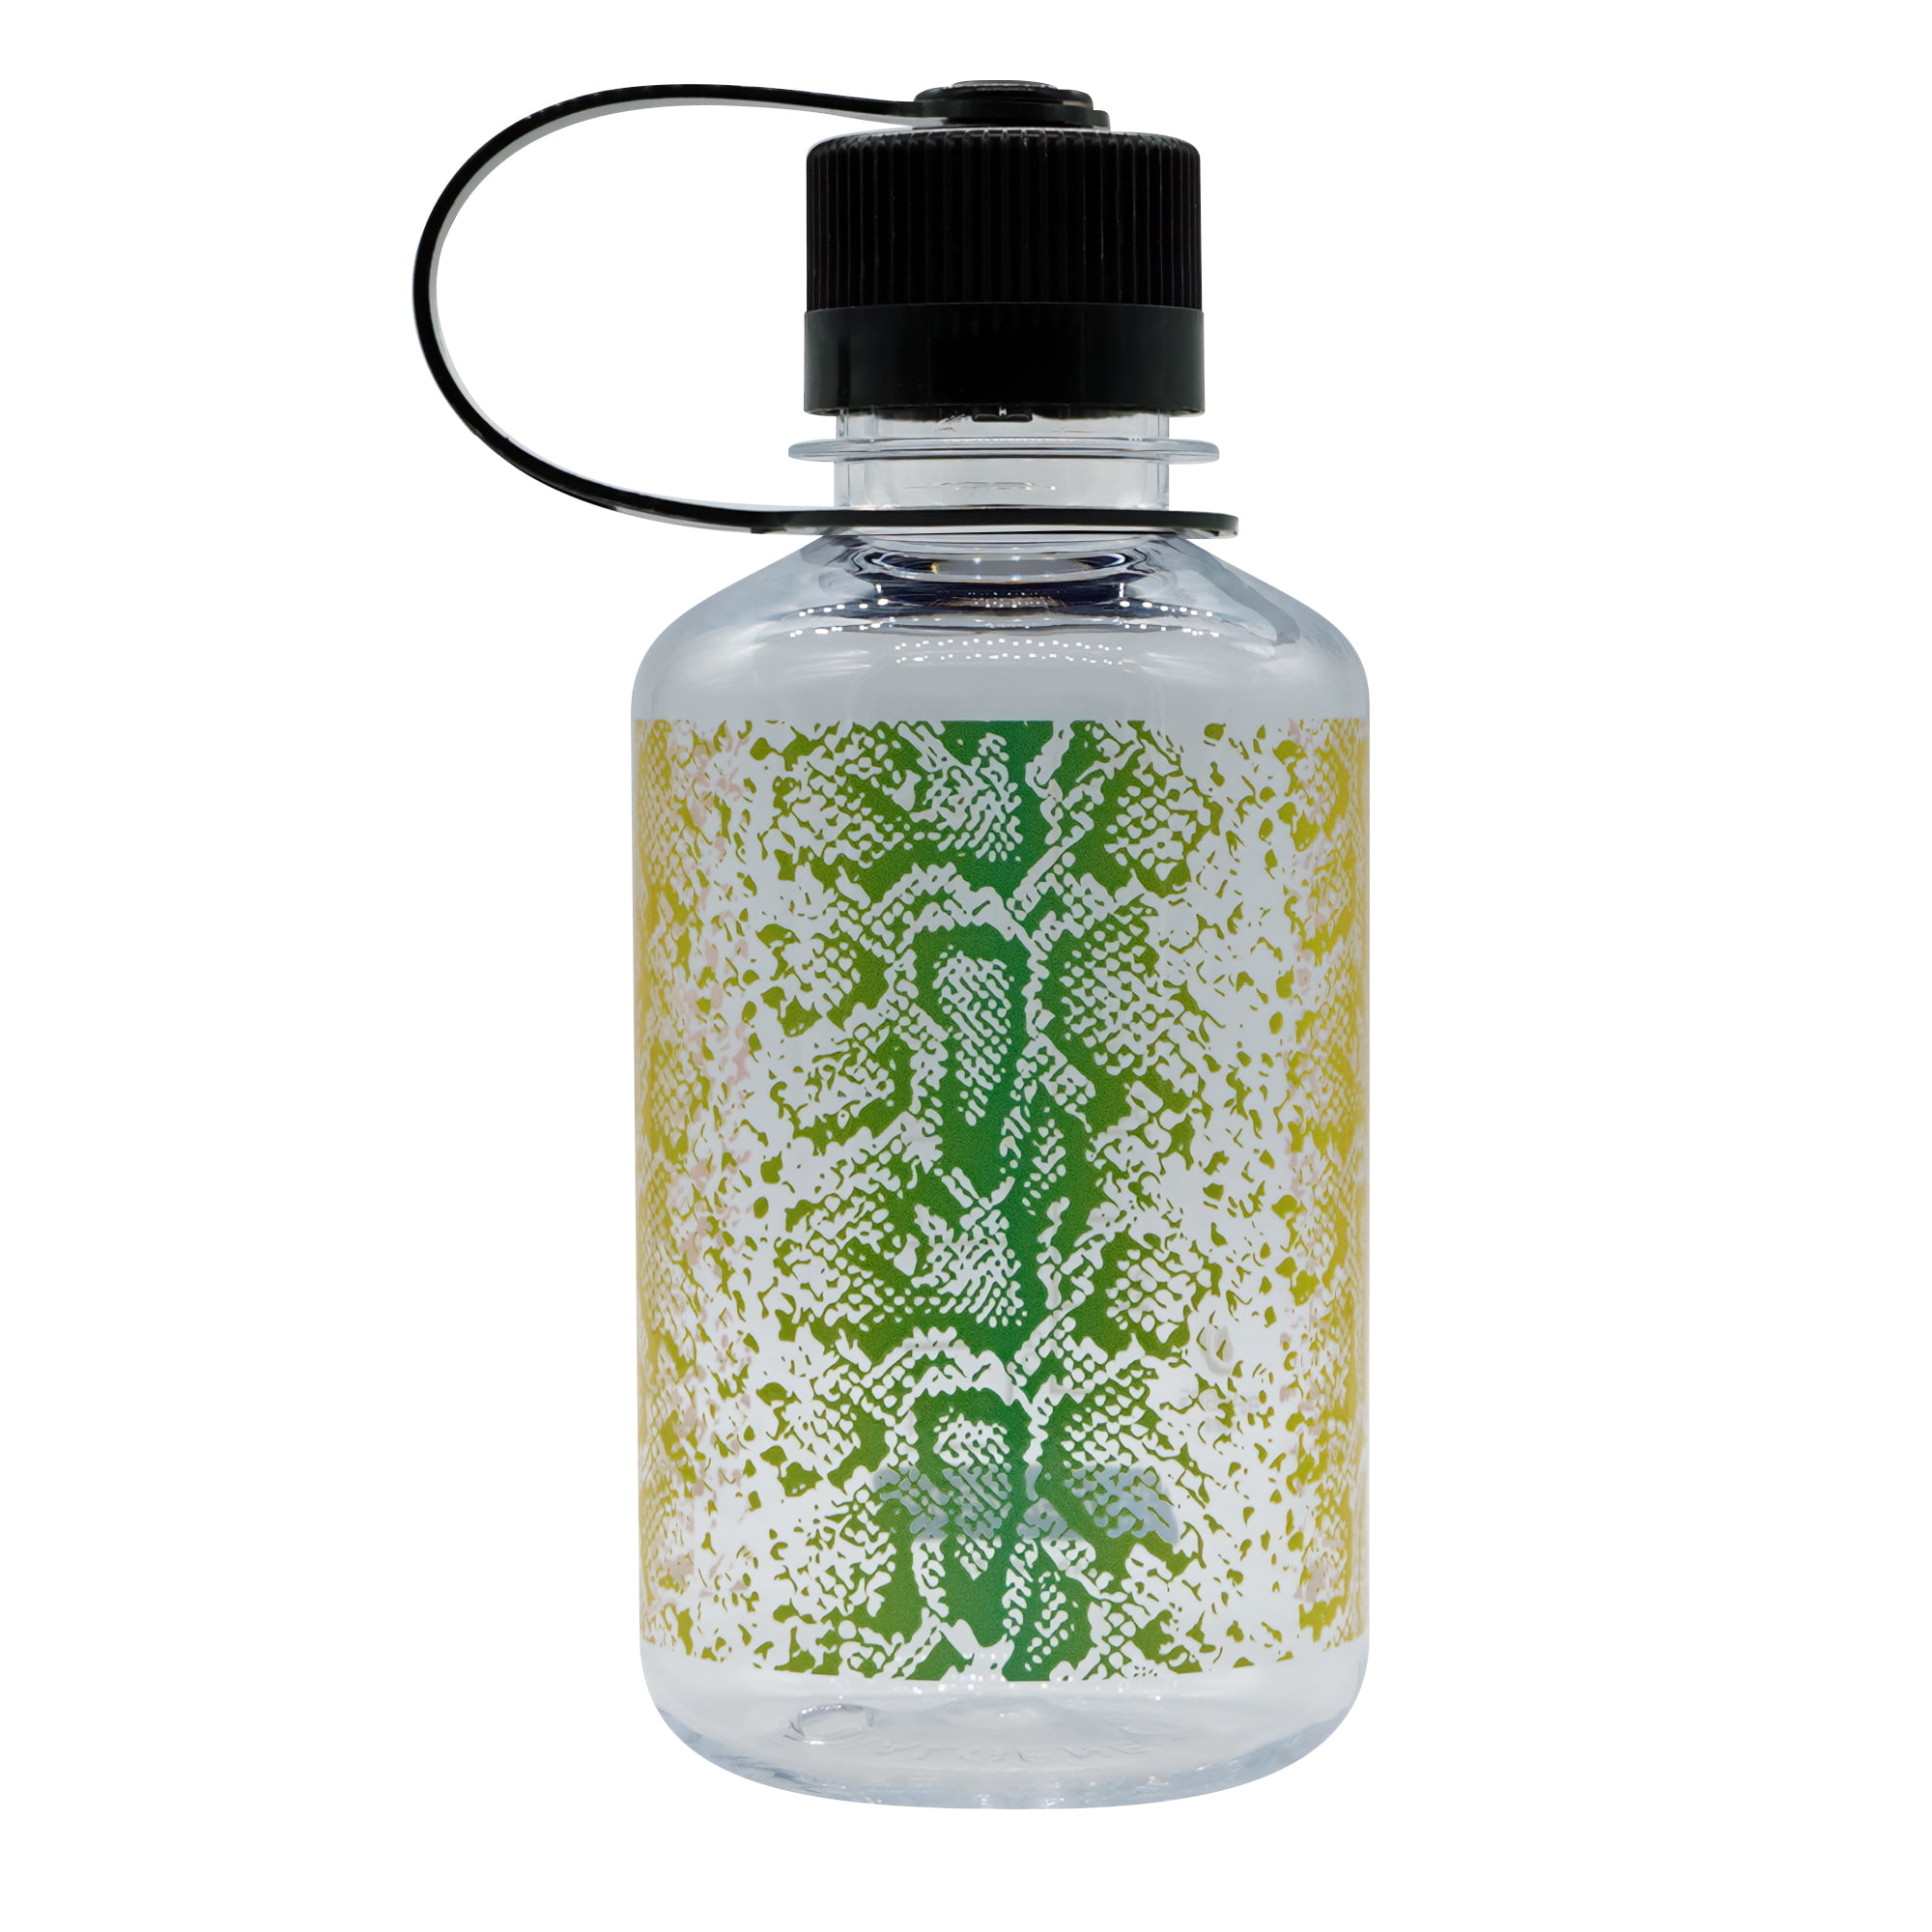 DNA Science Art Water Bottle Single Helix Water Bottle Gift for Him Gift  for Scientist Gift for Nerd R210GR 